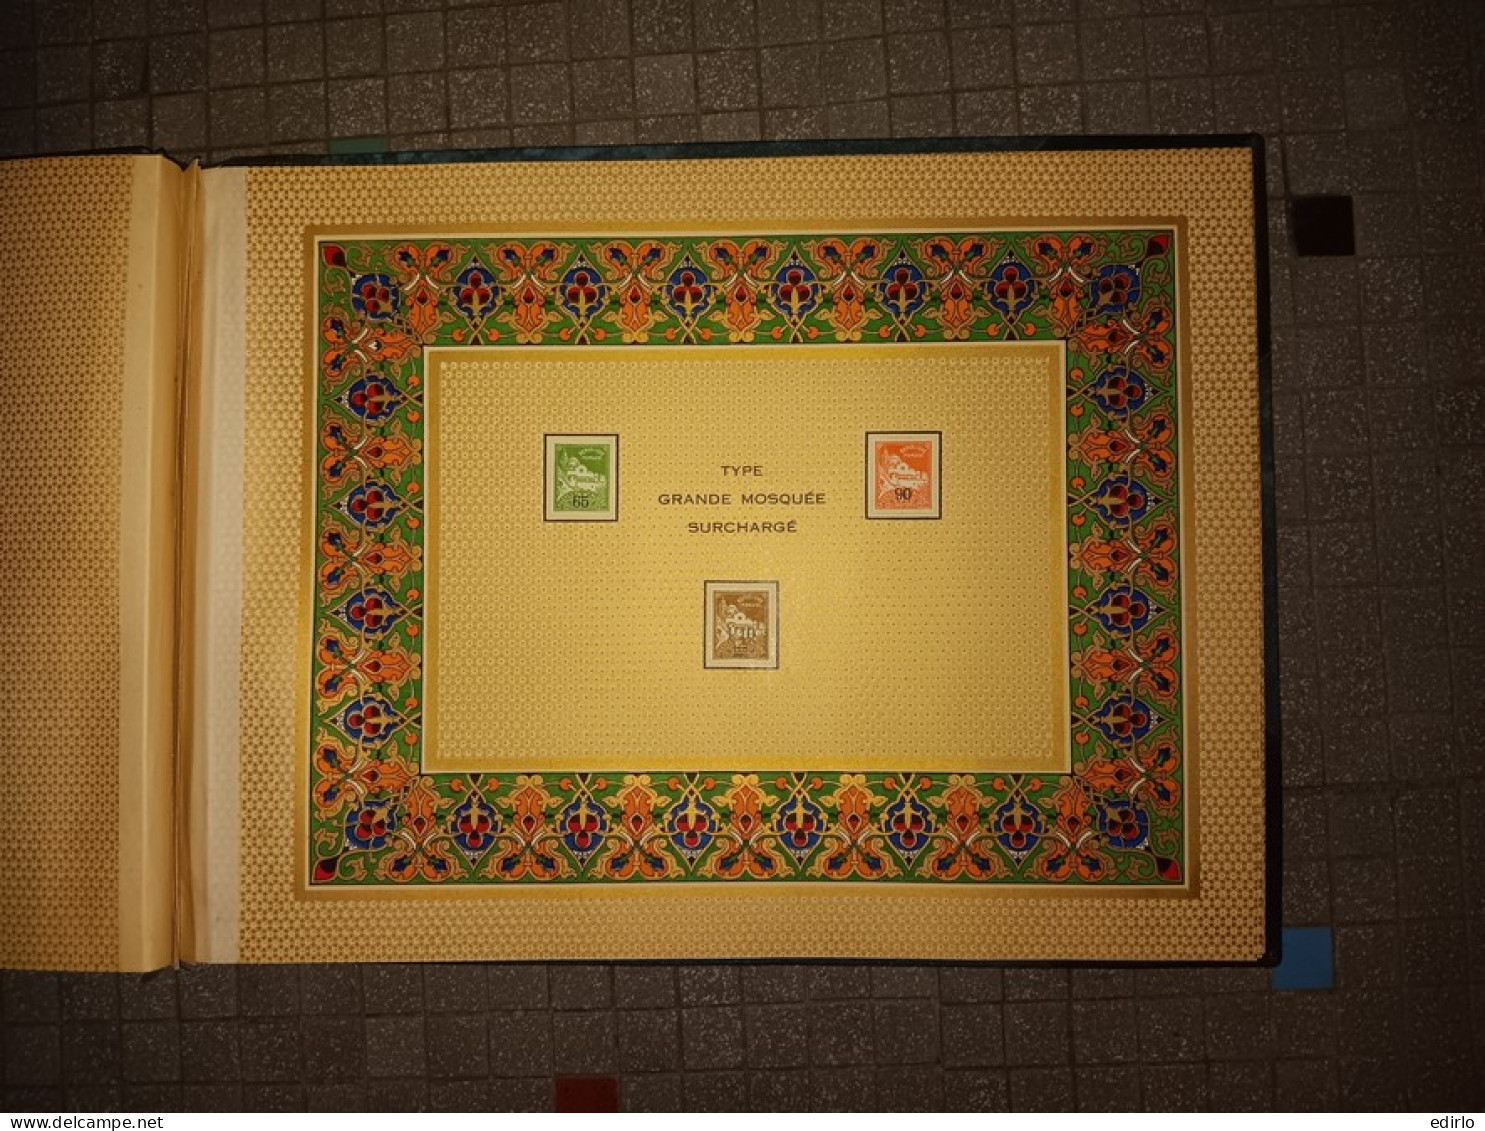 /// RARISSIME 155 EXEMPLAIRES ///  Album avec les timbres d'Algérie neufs avant commémoration du CENTENAIRE de l'ALGERIE